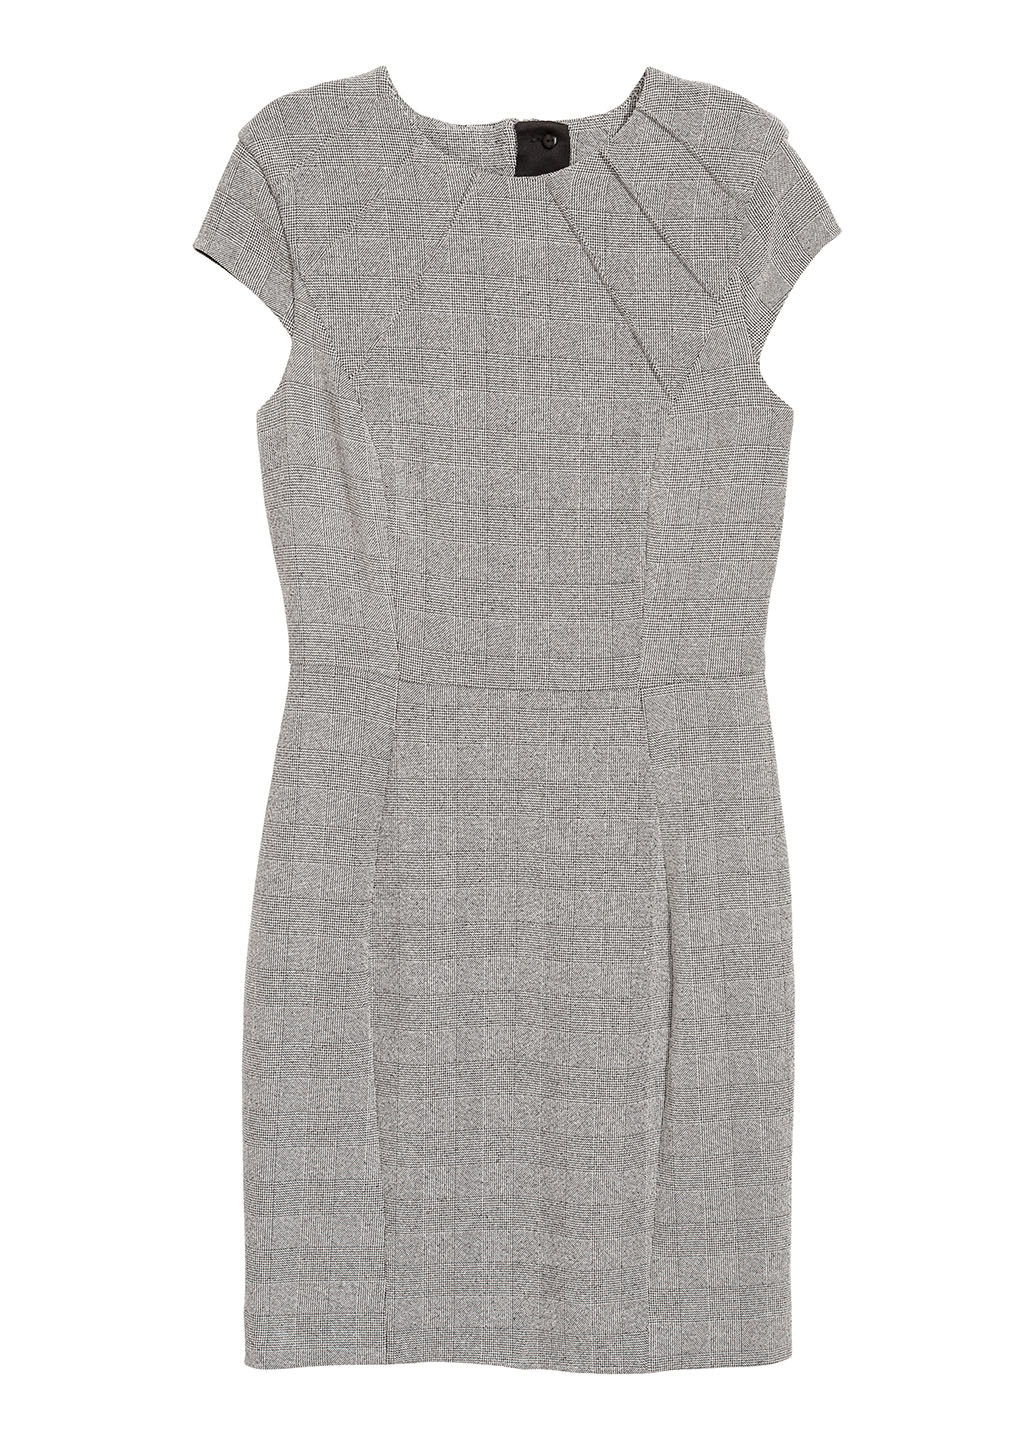 Светло-серое деловое платье короткое H&M с геометрическим узором